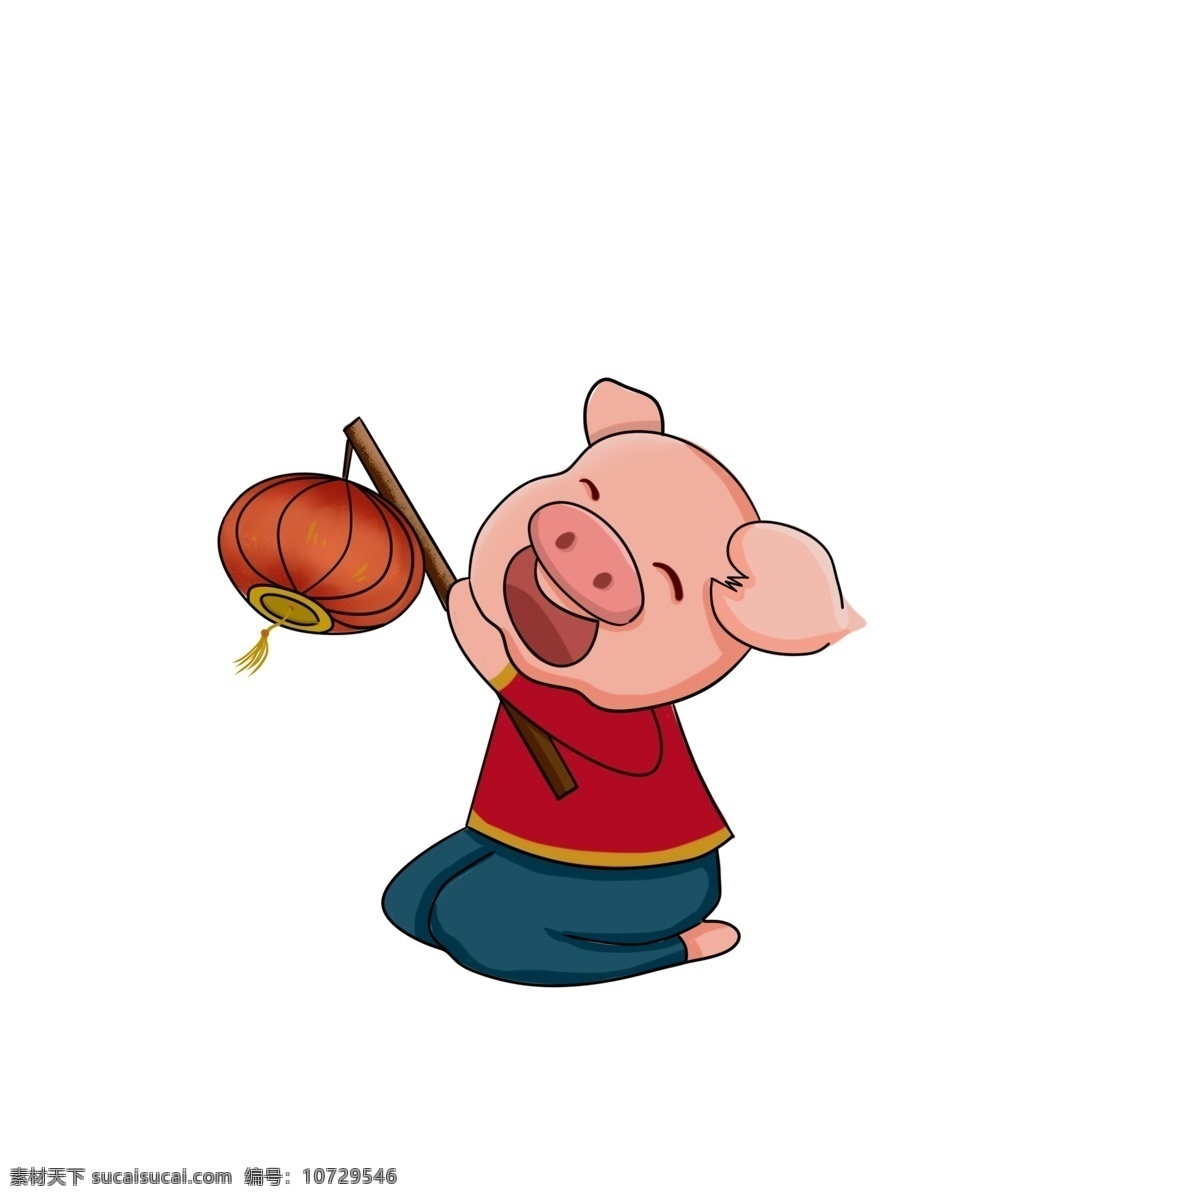 猪年 提 灯笼 小 猪 卡通 中国风 春节 插画 新春 新年 2019年 小猪形象 猪年形象 小猪 开心小猪 可爱小猪